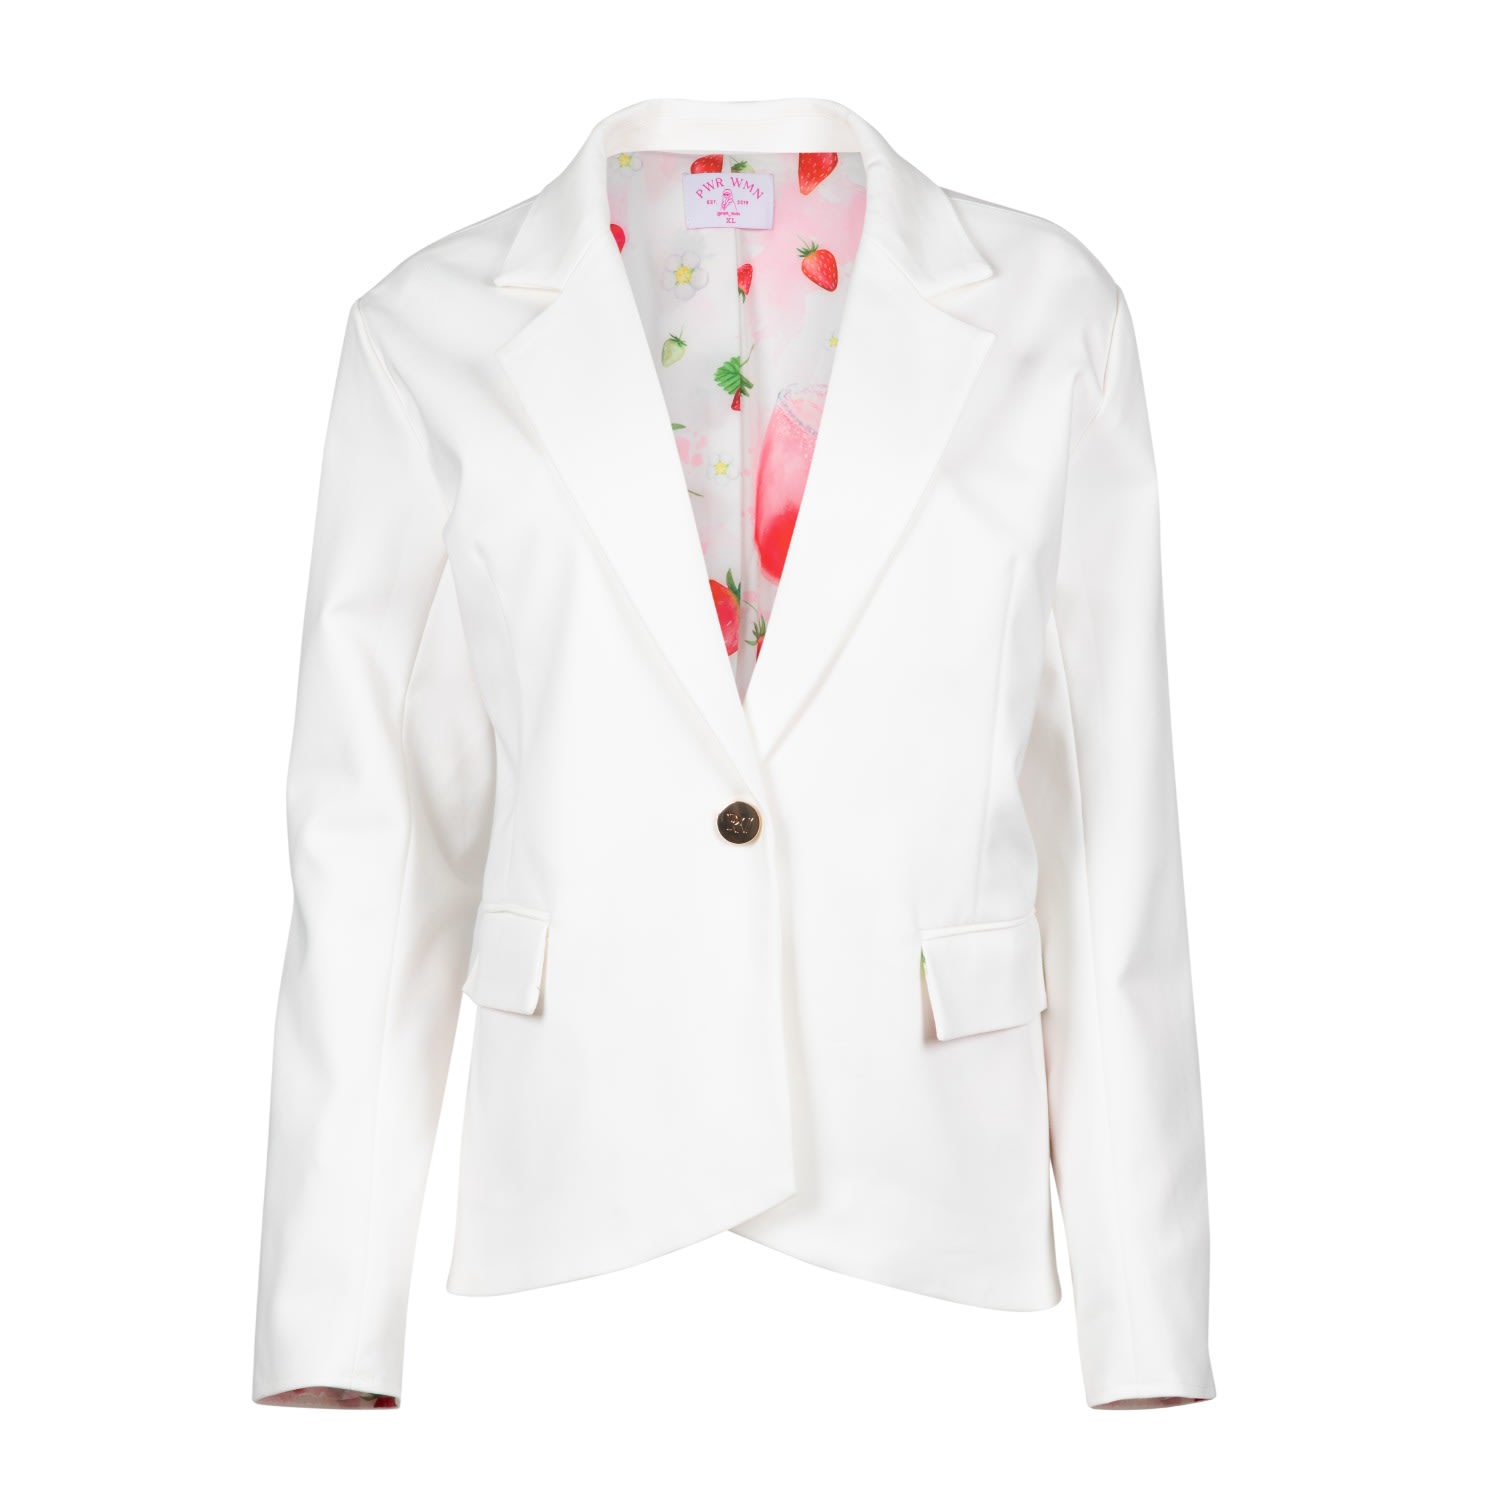 Strawberry Fields - Women’s White Summer Blazer Suit Jacket Medium Pwr Wmn